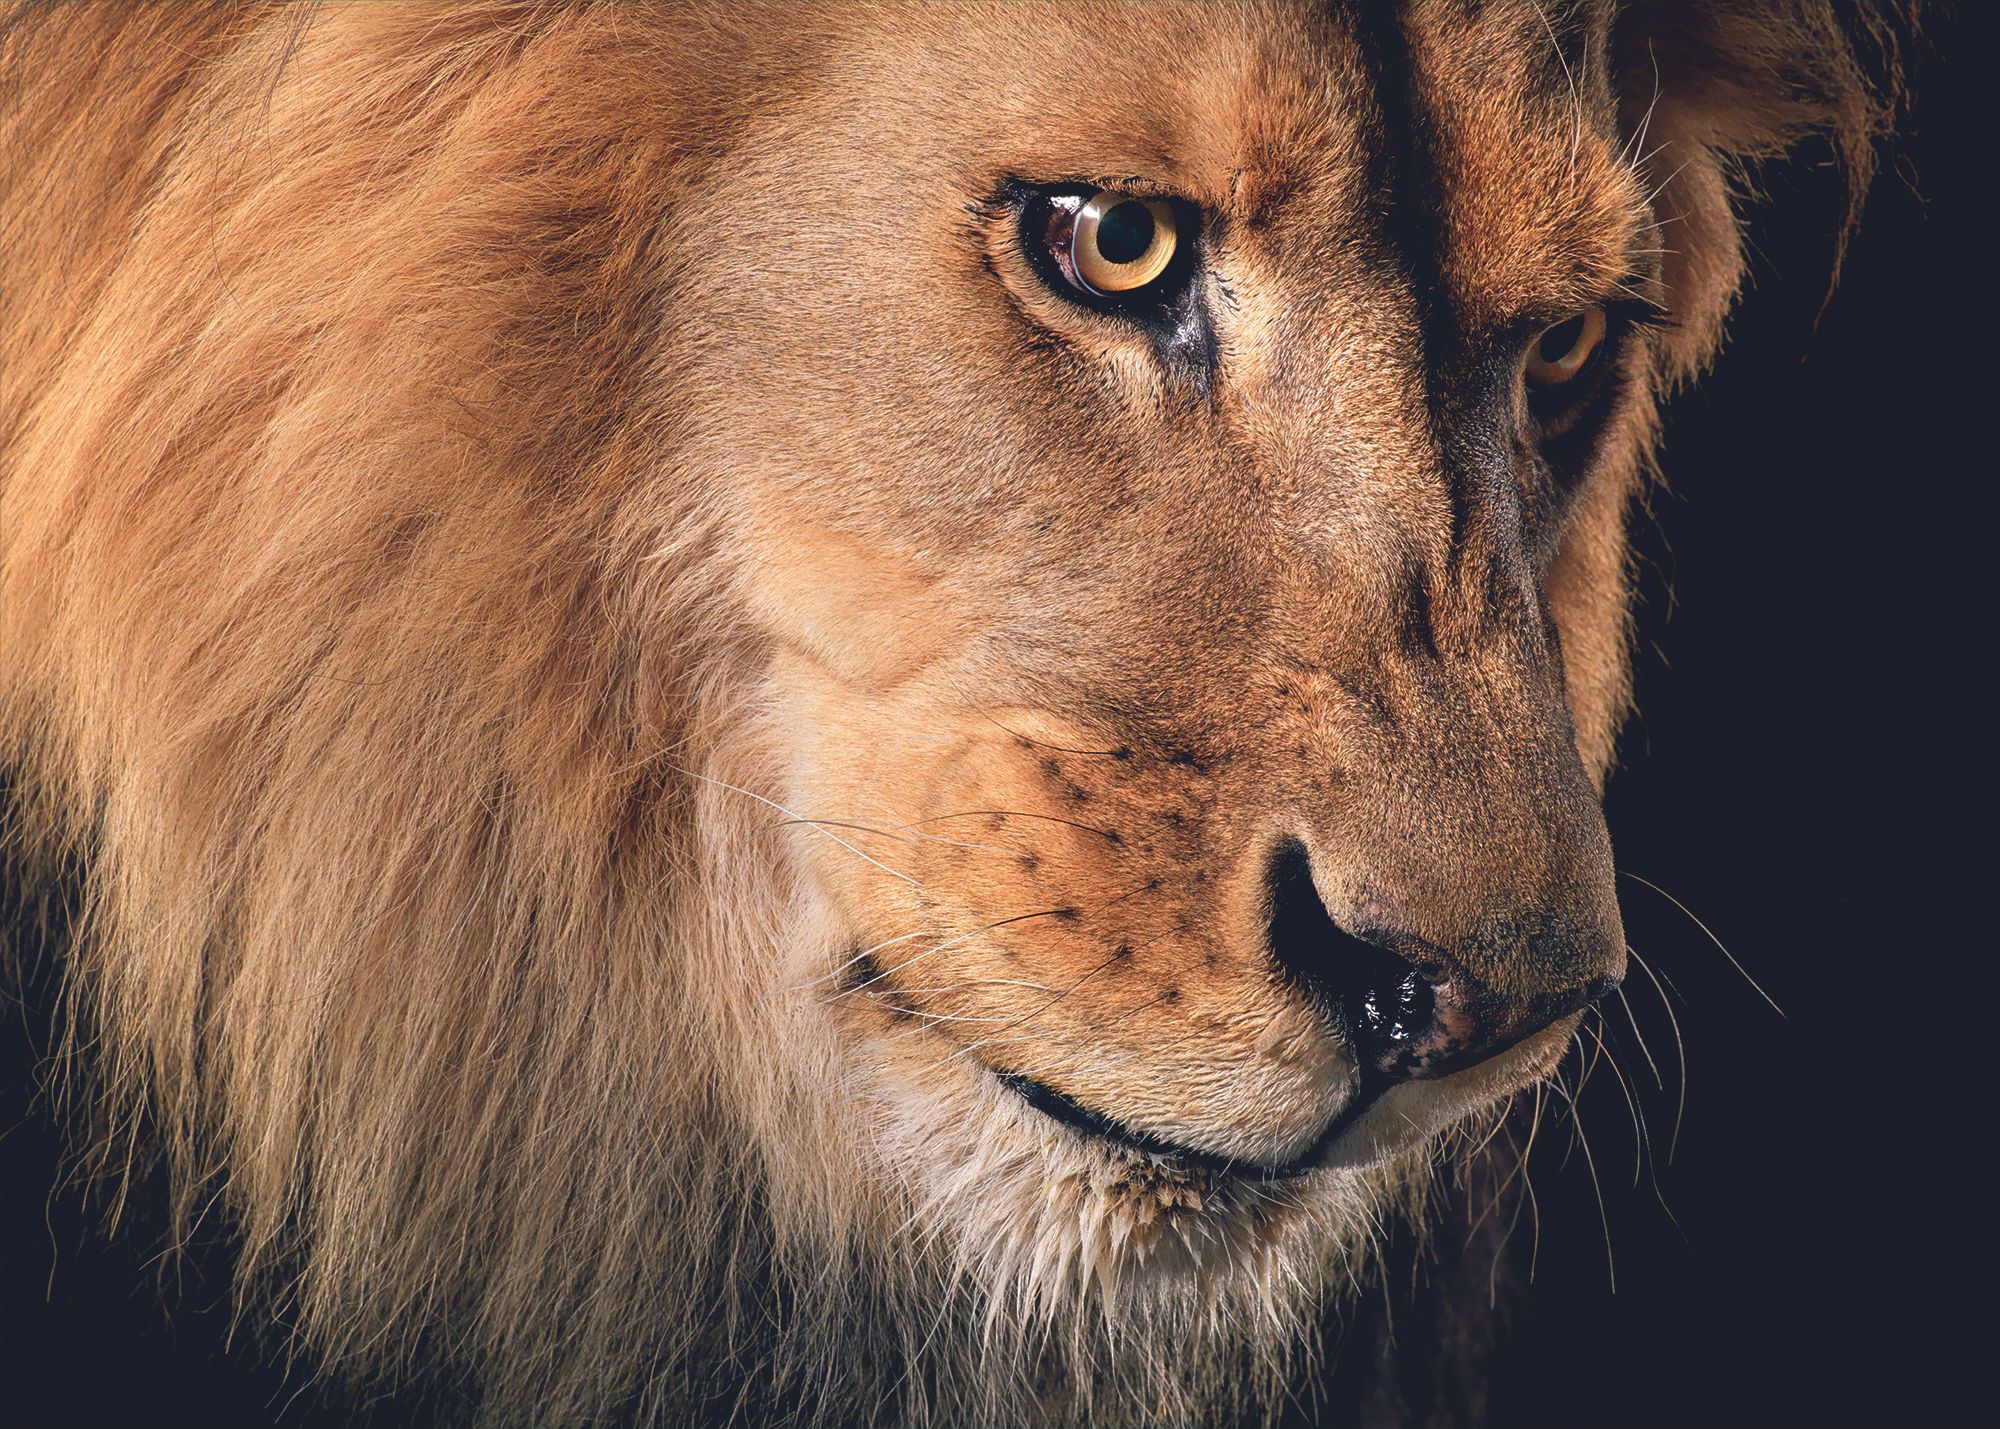 Fotografía de un león que integra la exposición "Emociones en peligro".